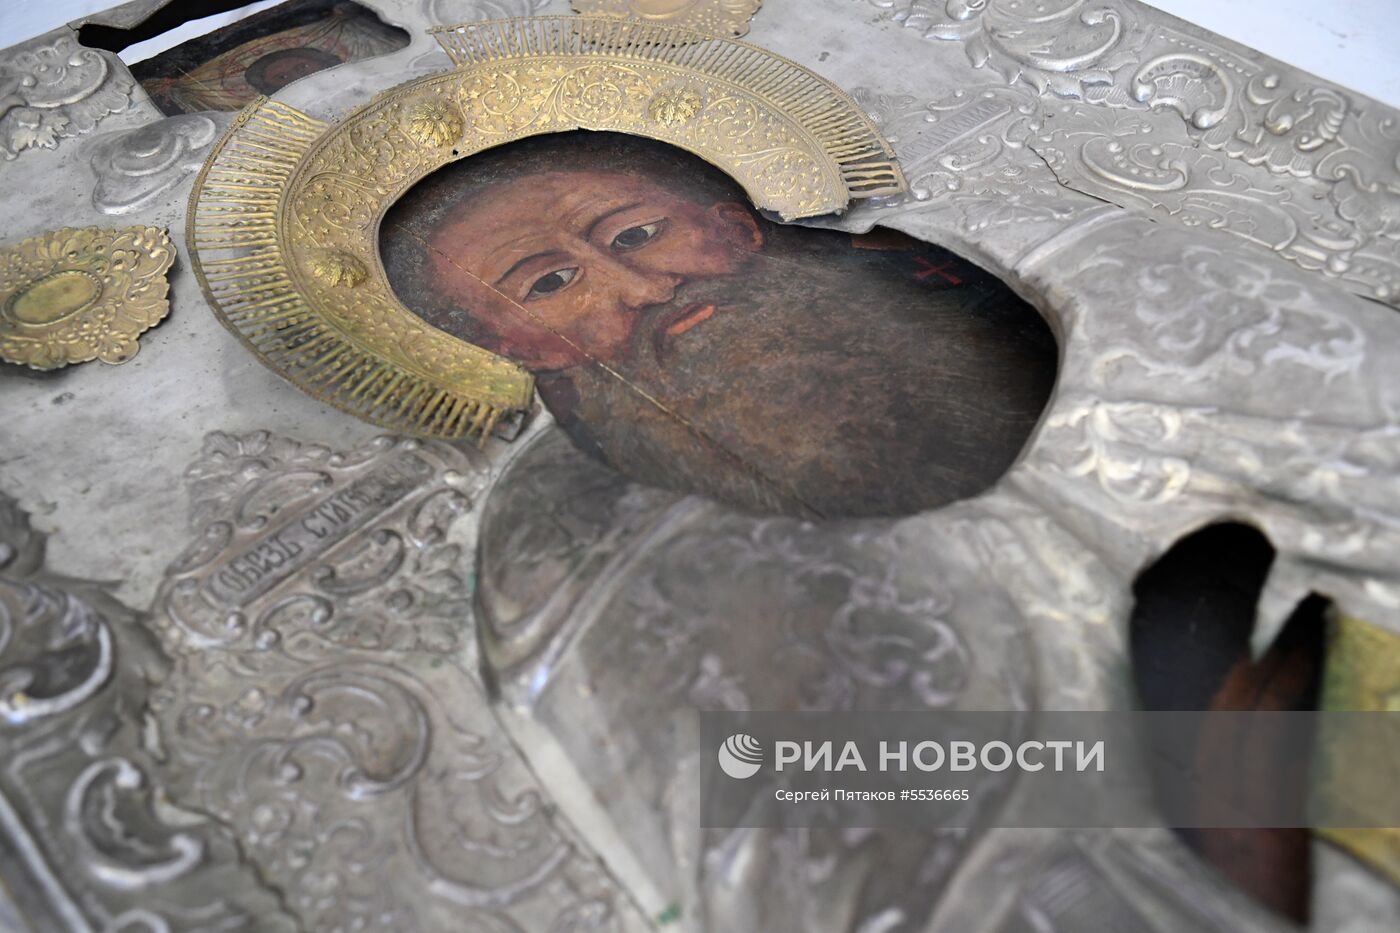 Ферапонтов Белозерский монастырь в Вологодской области